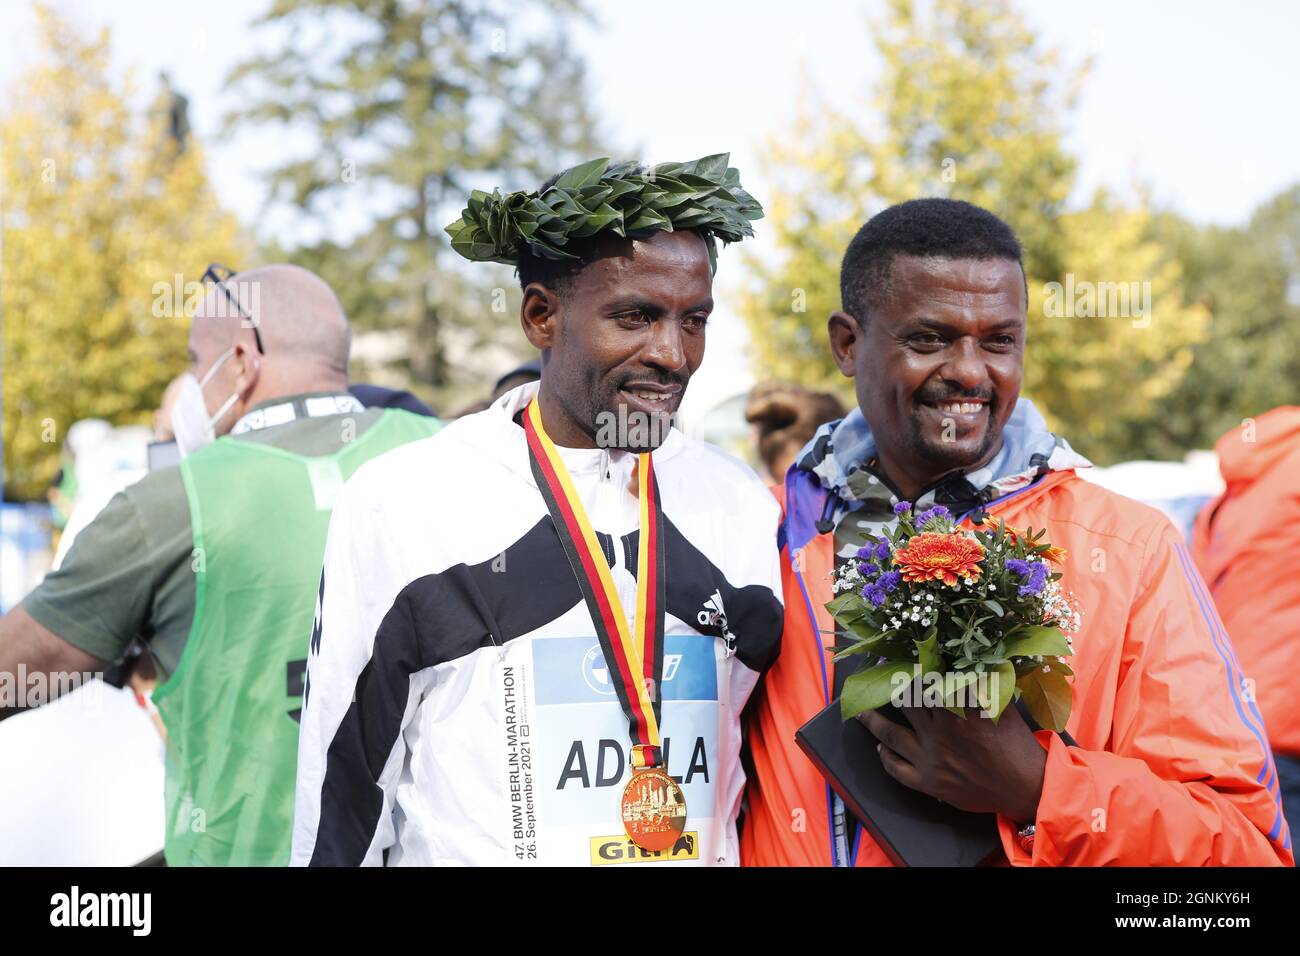 09/26/2021, Berlino, Germania, Guye Adola alla cerimonia di premiazione. Guye Adola dall'Etiopia vince la 47a Maratona di Berlino in 2:05:45. Il secondo posto è andato al keniota Bethwel Yegon con 2:06:14 ore e il terzo posto è stato vinto dal migliore favorito Kenenisa Bekele con 02:06:47 ore. Foto Stock